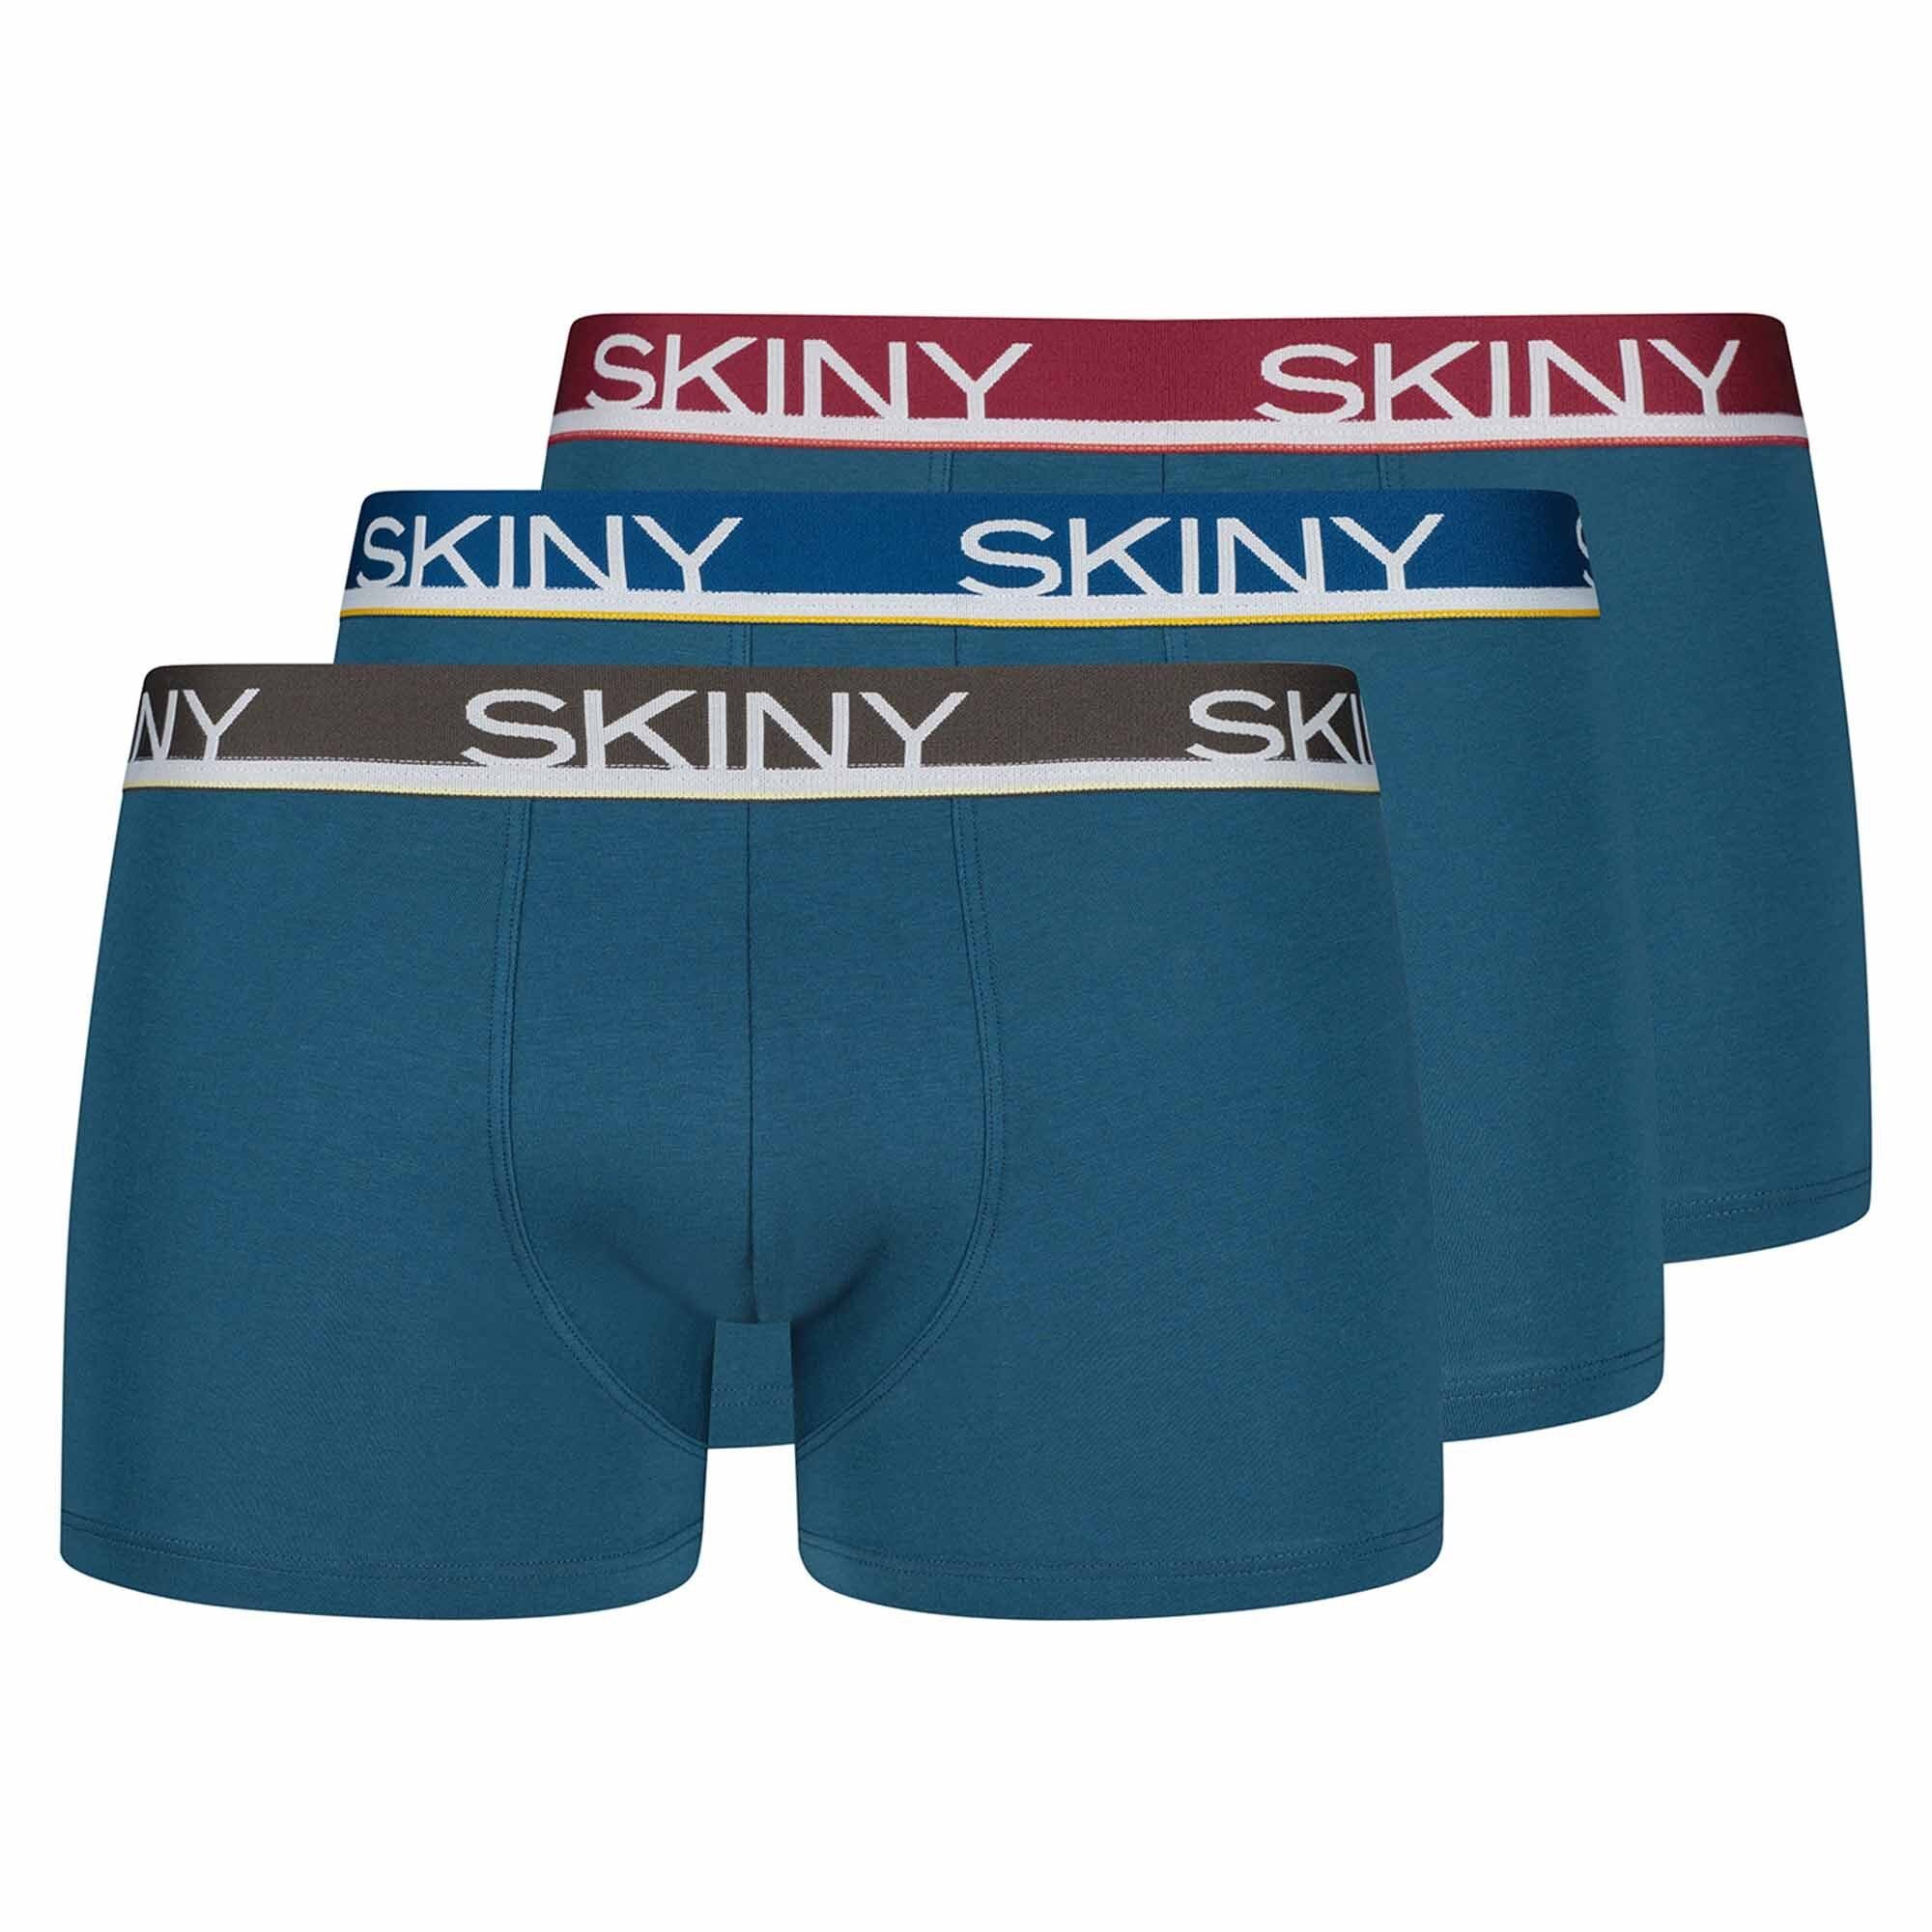 Skiny Boxer Herren Pants 3er Pack - Unterwäsche, Unterhose Blau